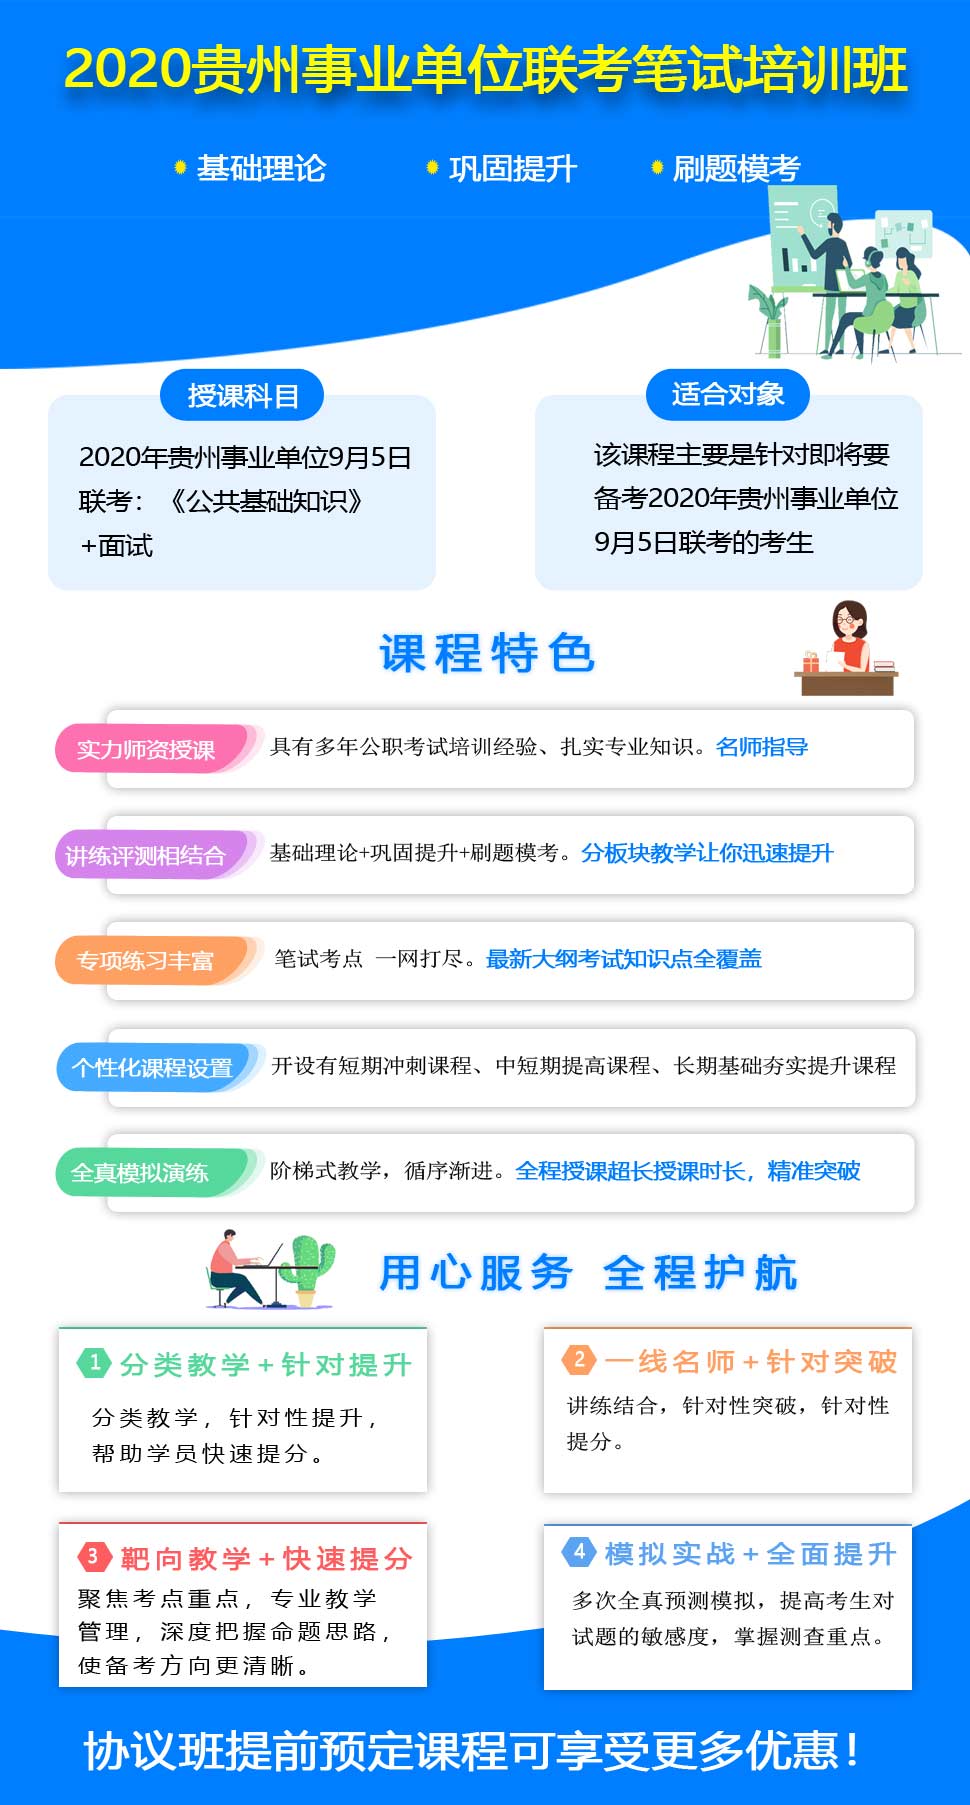 贵州9.5事业单位联考笔试培训课程